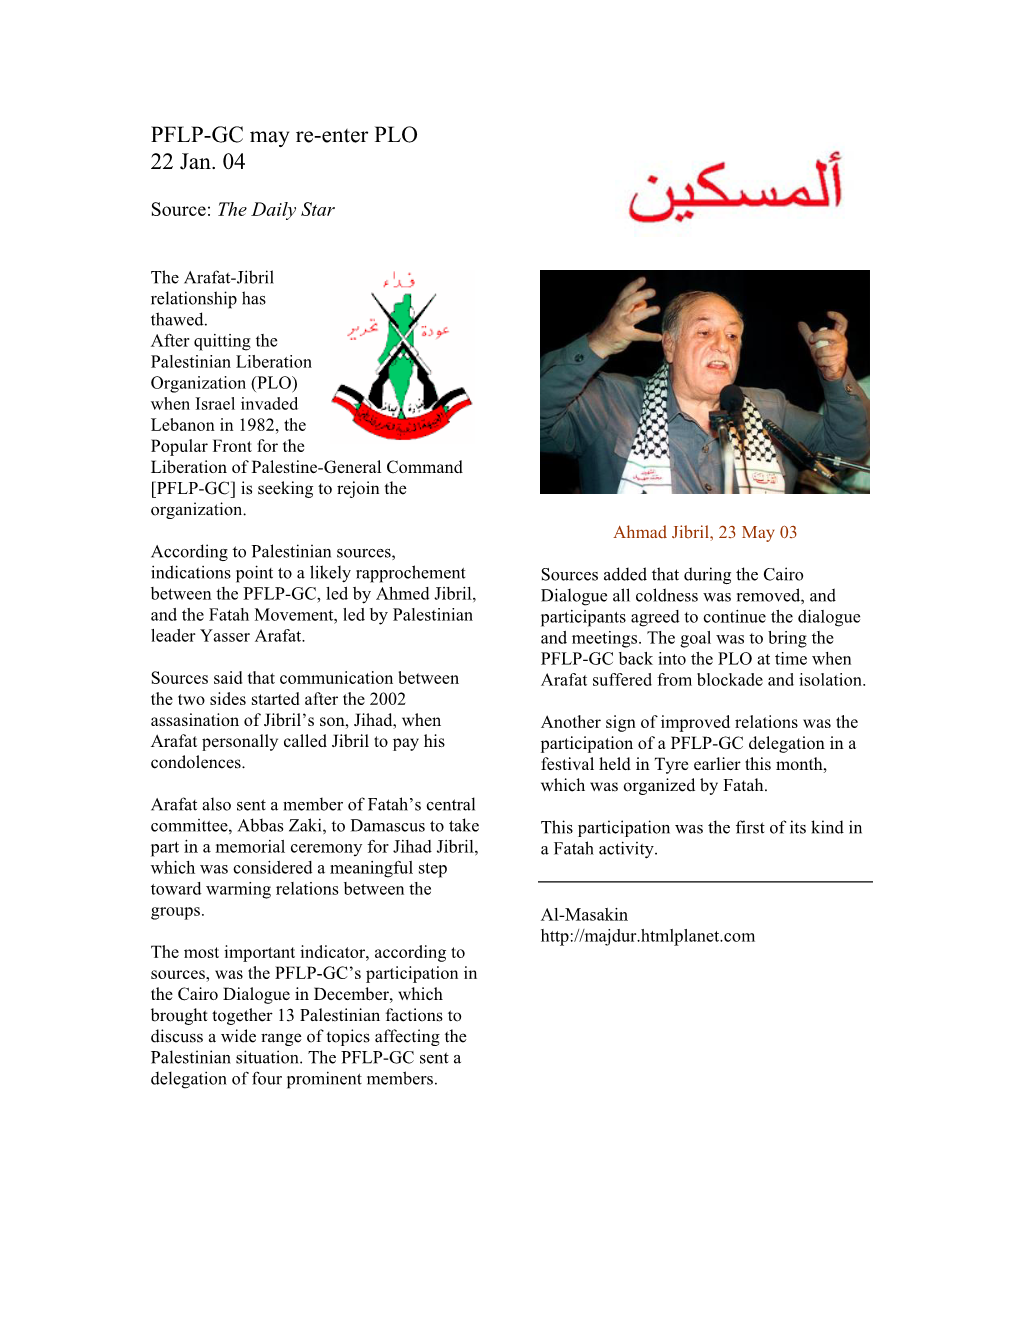 PFLP-GC May Re-Enter PLO 22 Jan